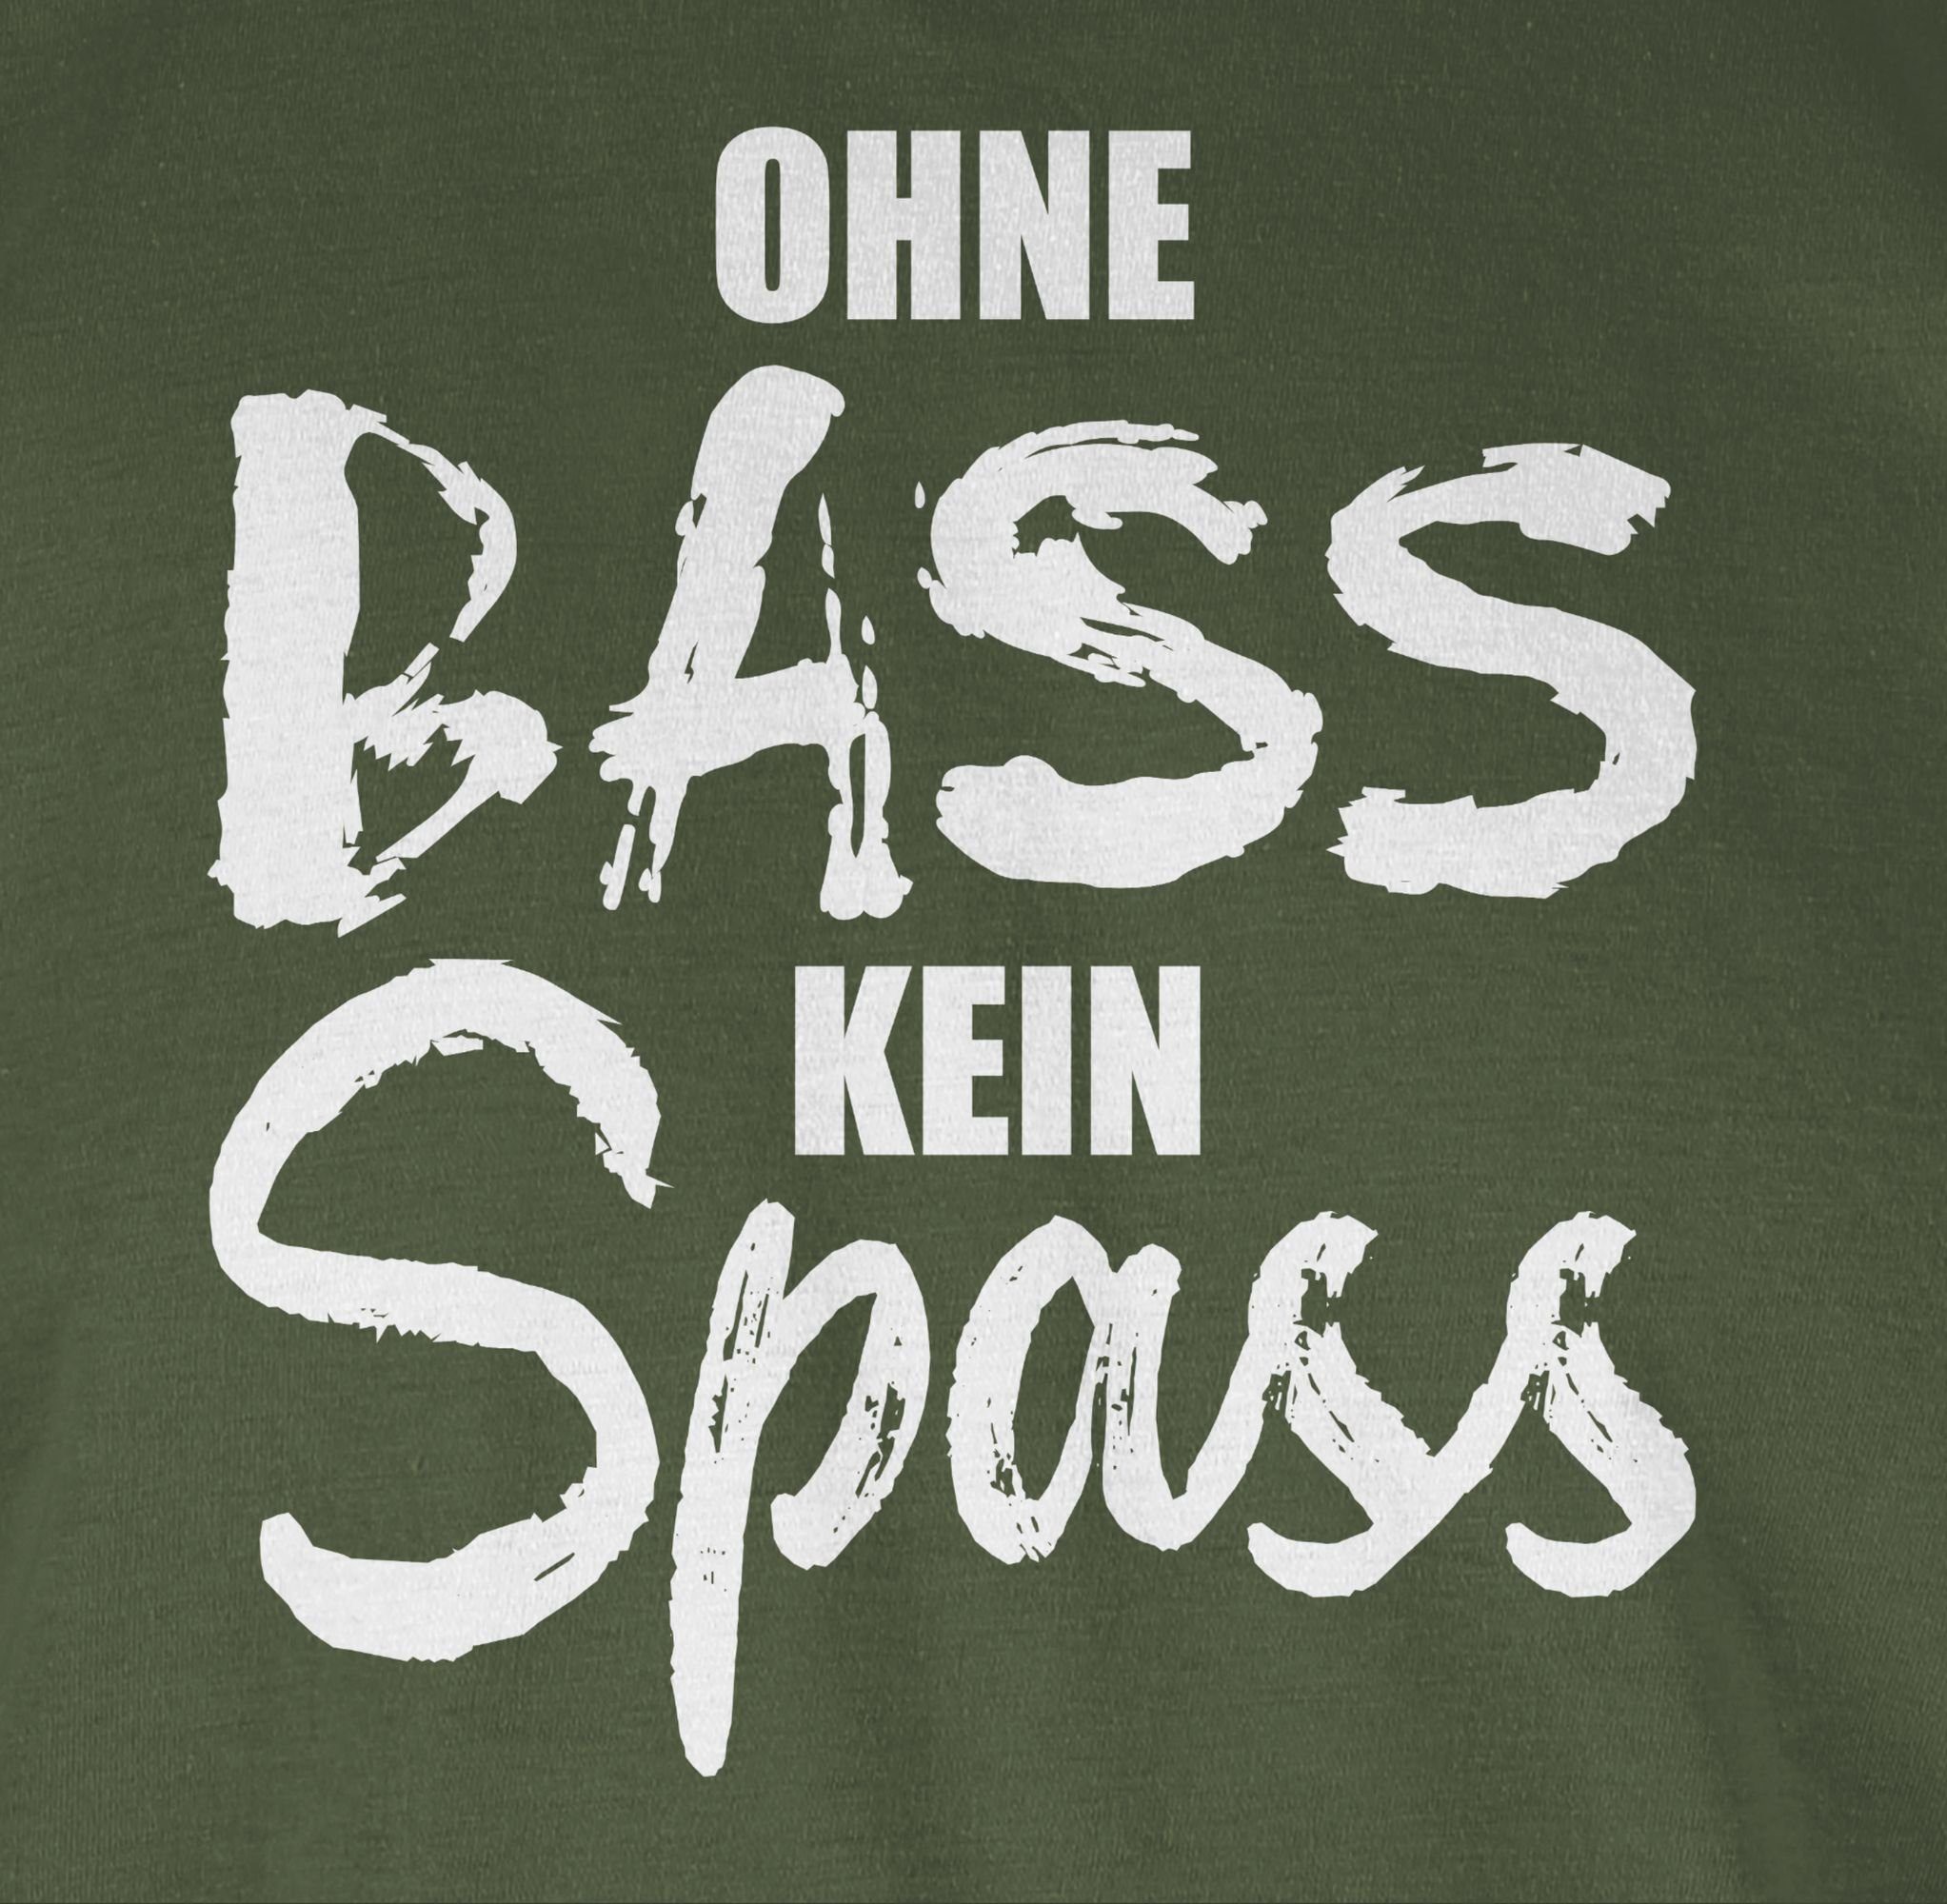 Festival Ohne 2 kein Shirtracer Zubehör T-Shirt weiß - Spass Grün Army Bass